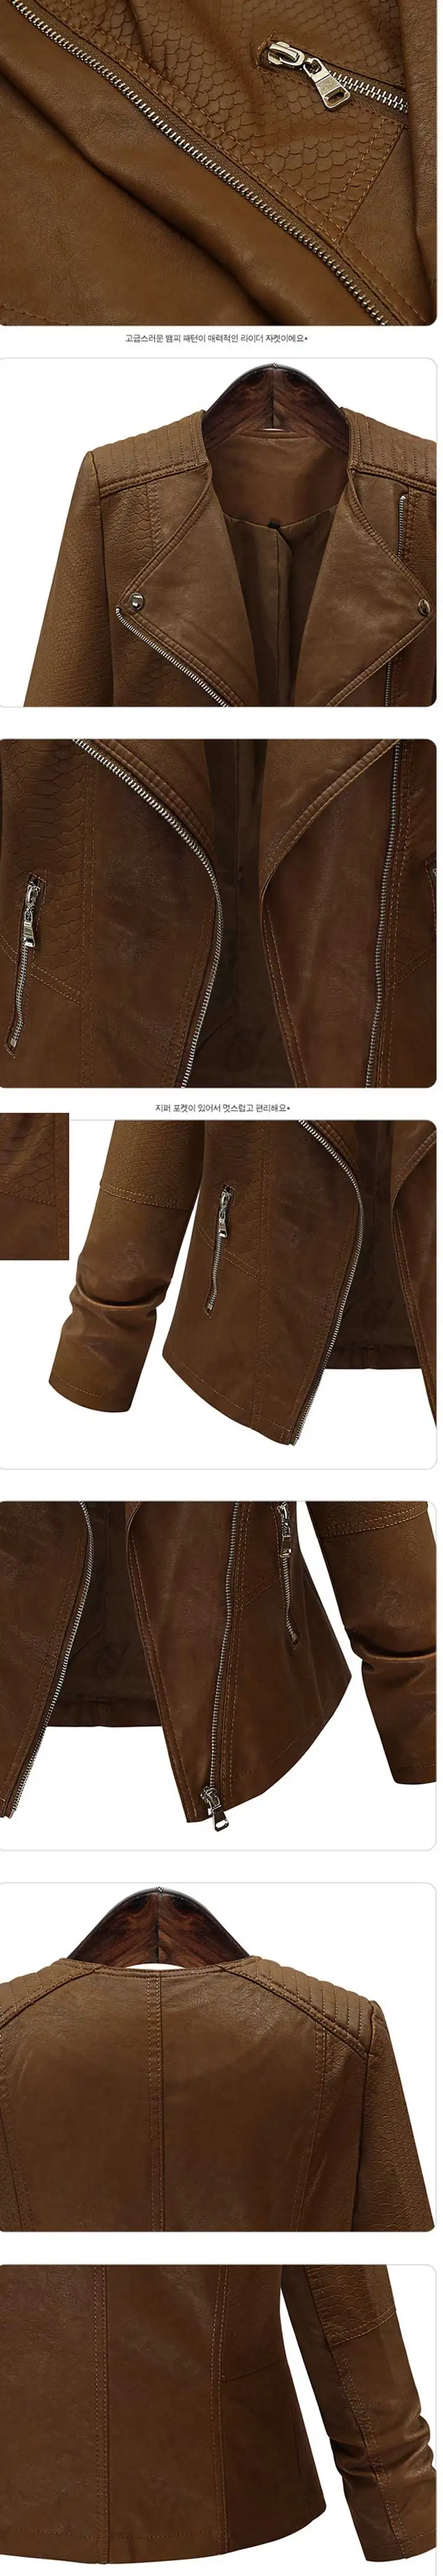 Chamarras де mujer 2018 Новая осень Большие размеры куртка из искусственной кожи Куртка Для женщин носить тонкие Европейский Стиль короткие кожаные